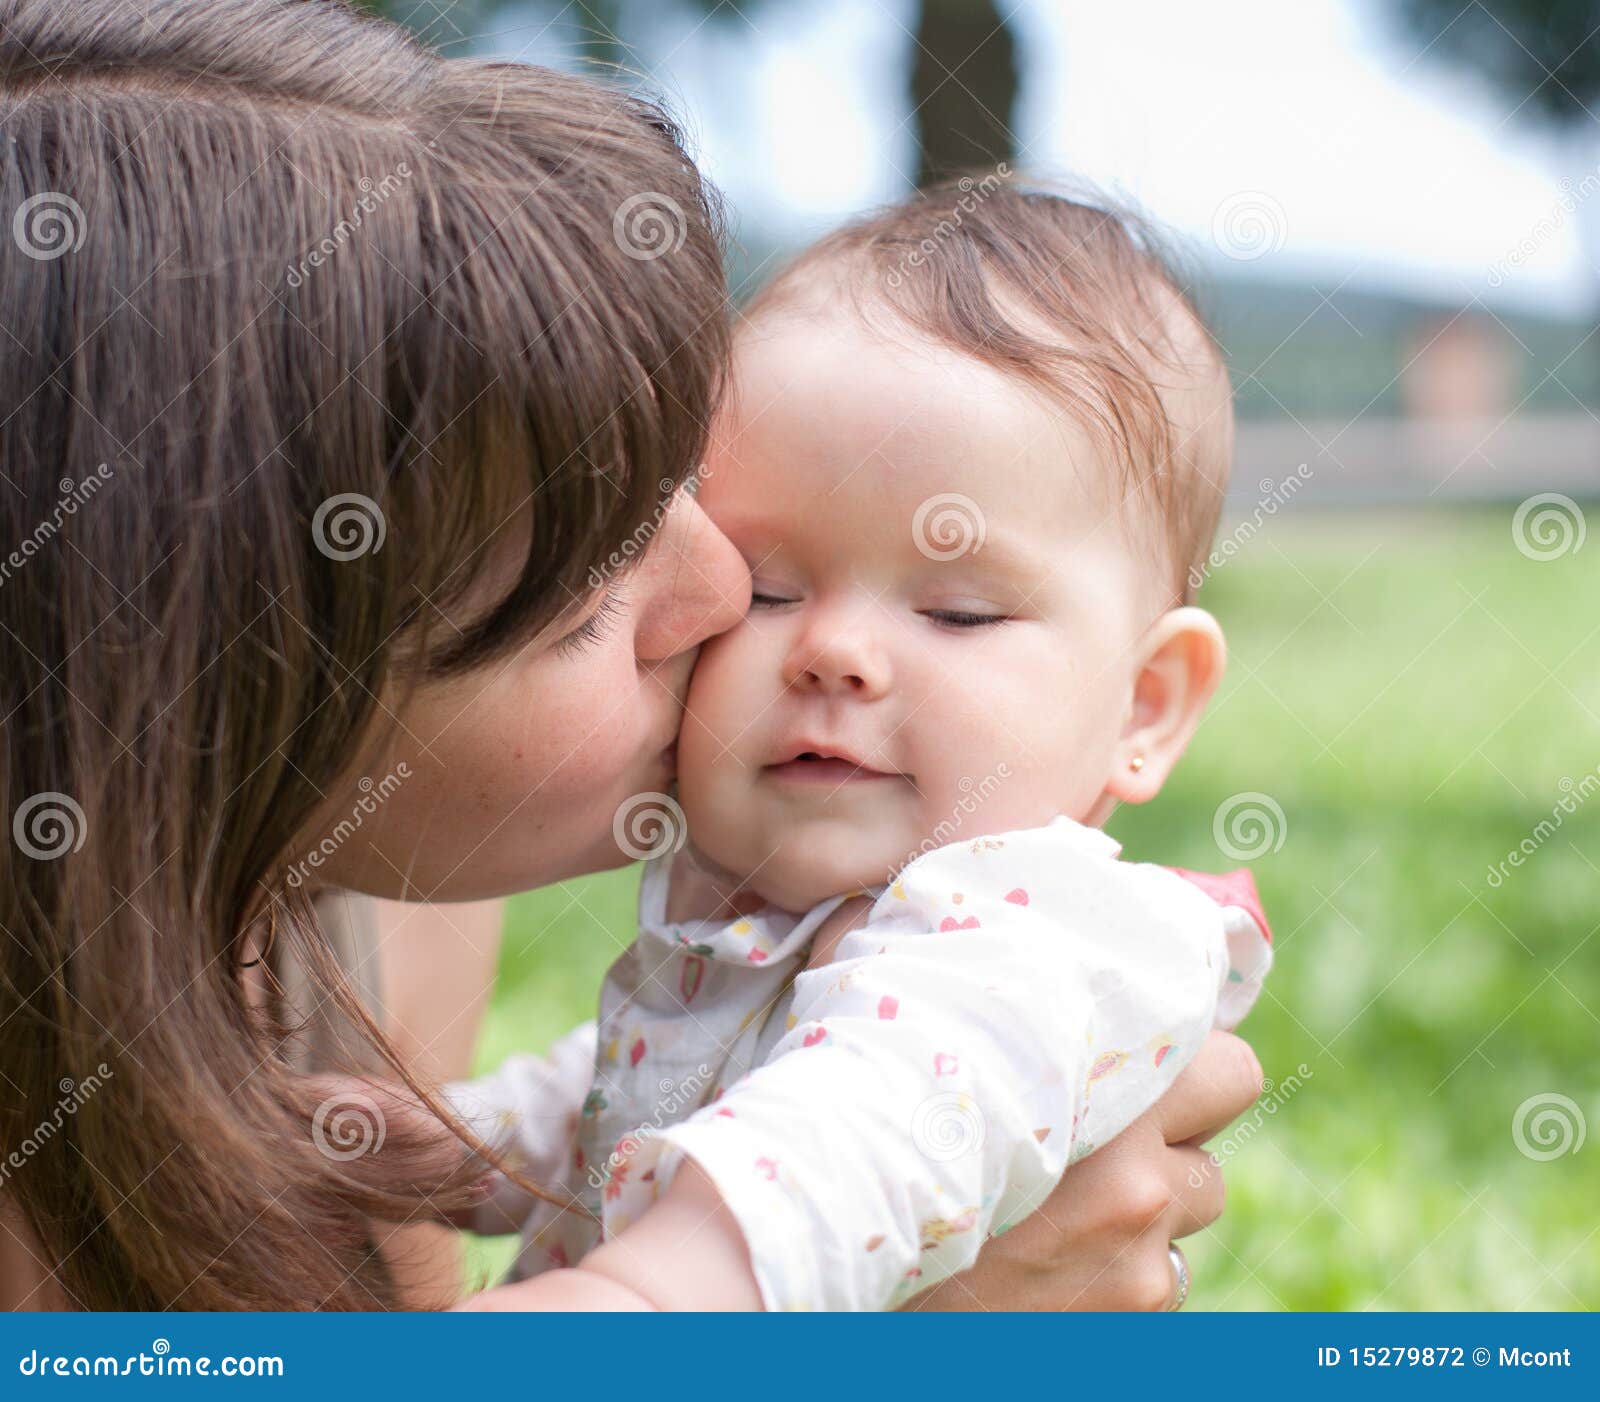 Поцелую маму в этот славный. Мама целует малыша. Мама целует с языком ребенка. Мама целует малыша фото. Первый поцелуй мамы.